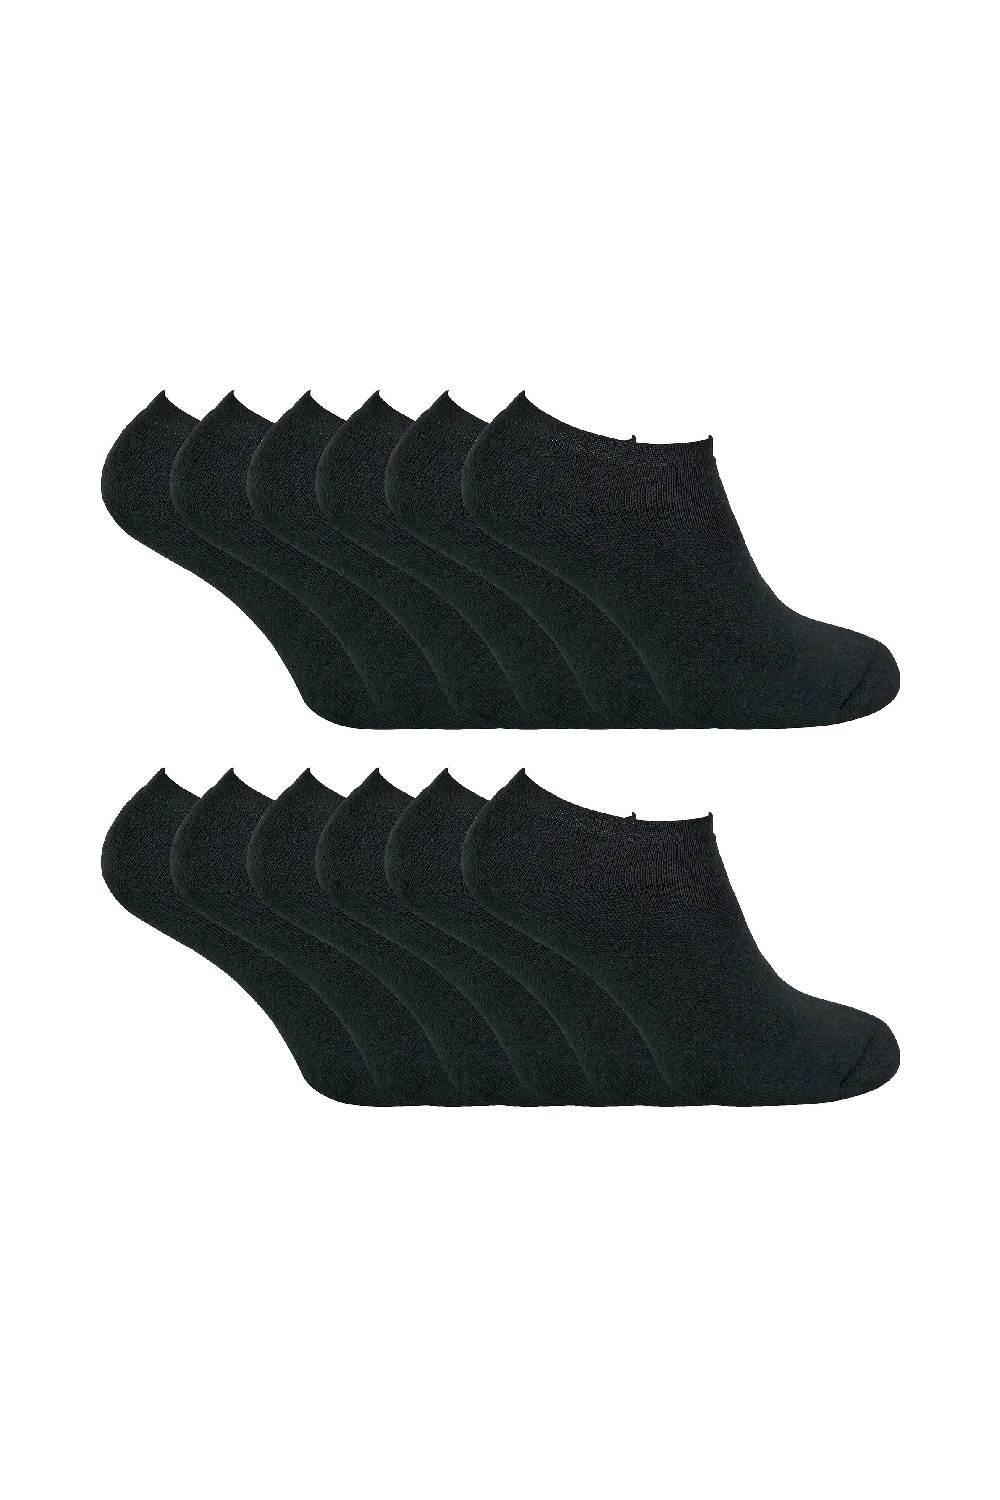 12 Pair Multipack Thermal Low Cut Trainer Winter Socks